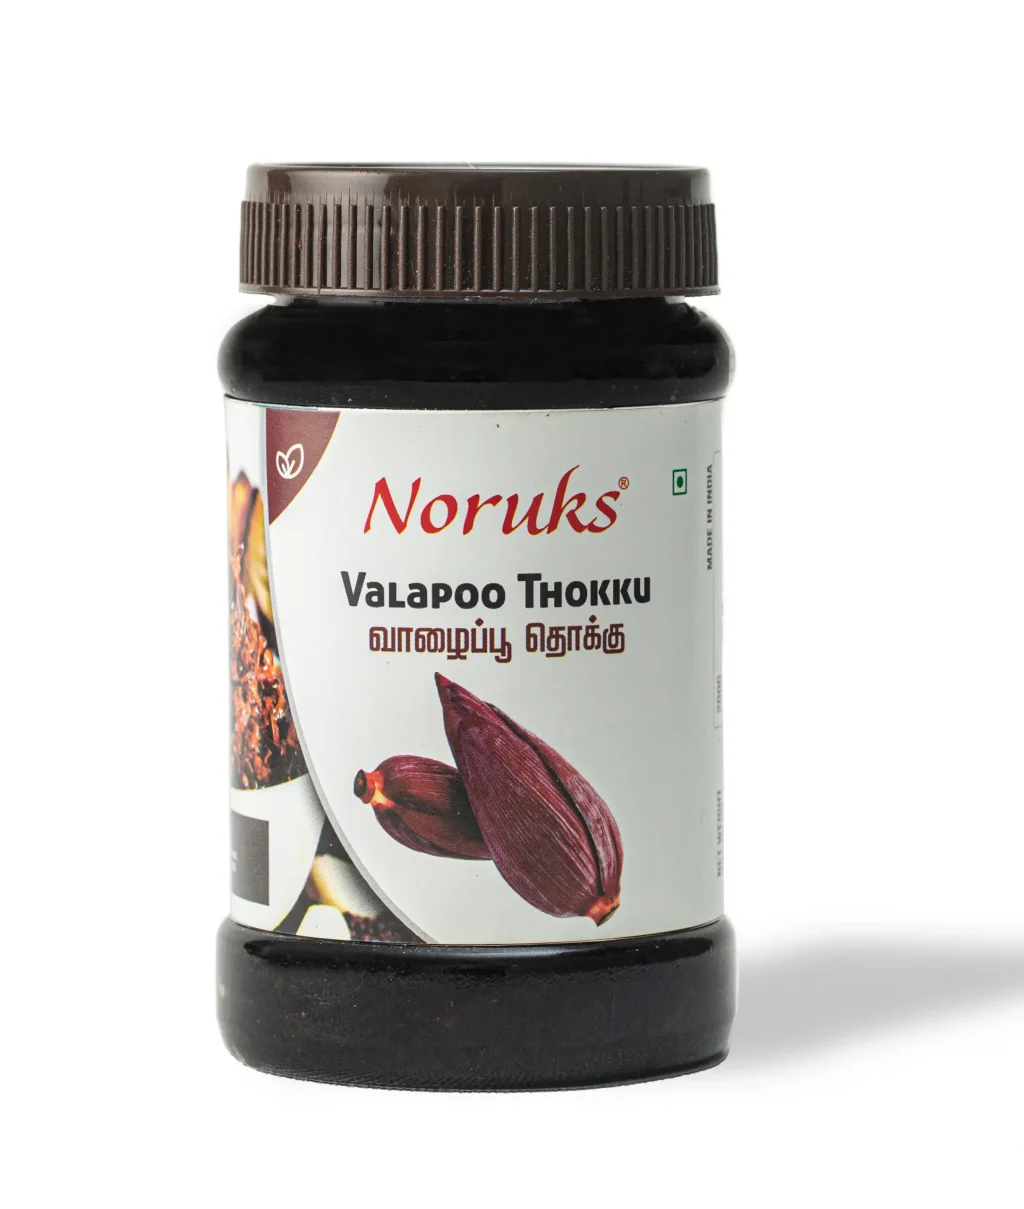 Buy Homemade Valaipoo Thokku Online at Noruks